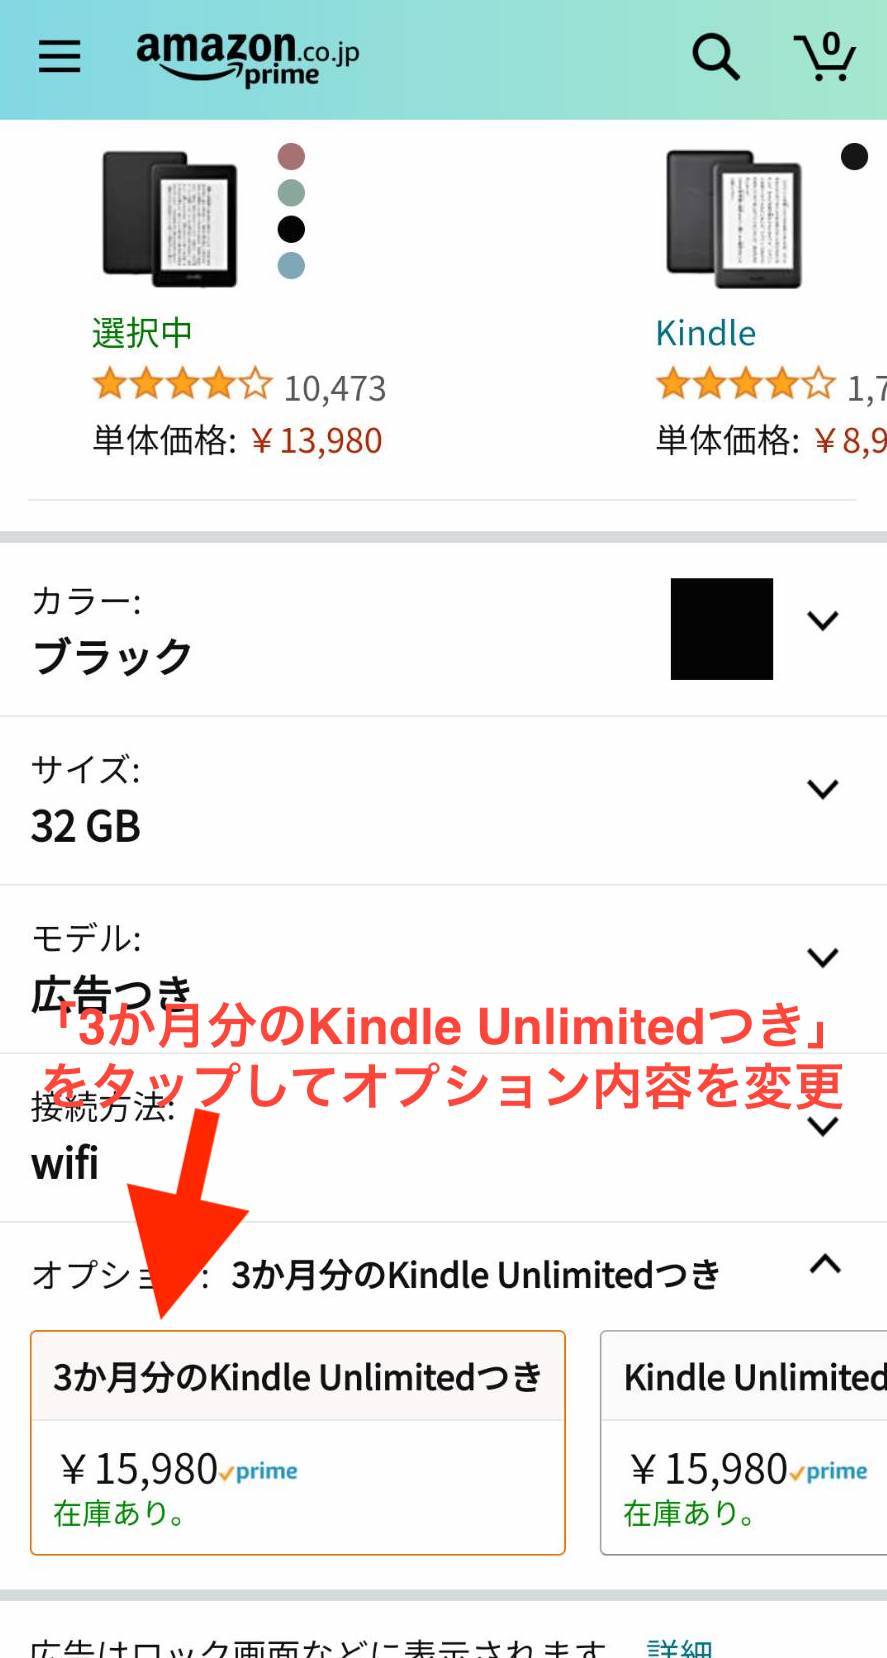 21年8月更新 Kindle Unlimitedキャンペーンまとめ 30日無料 2か月99円 再登録者も対象